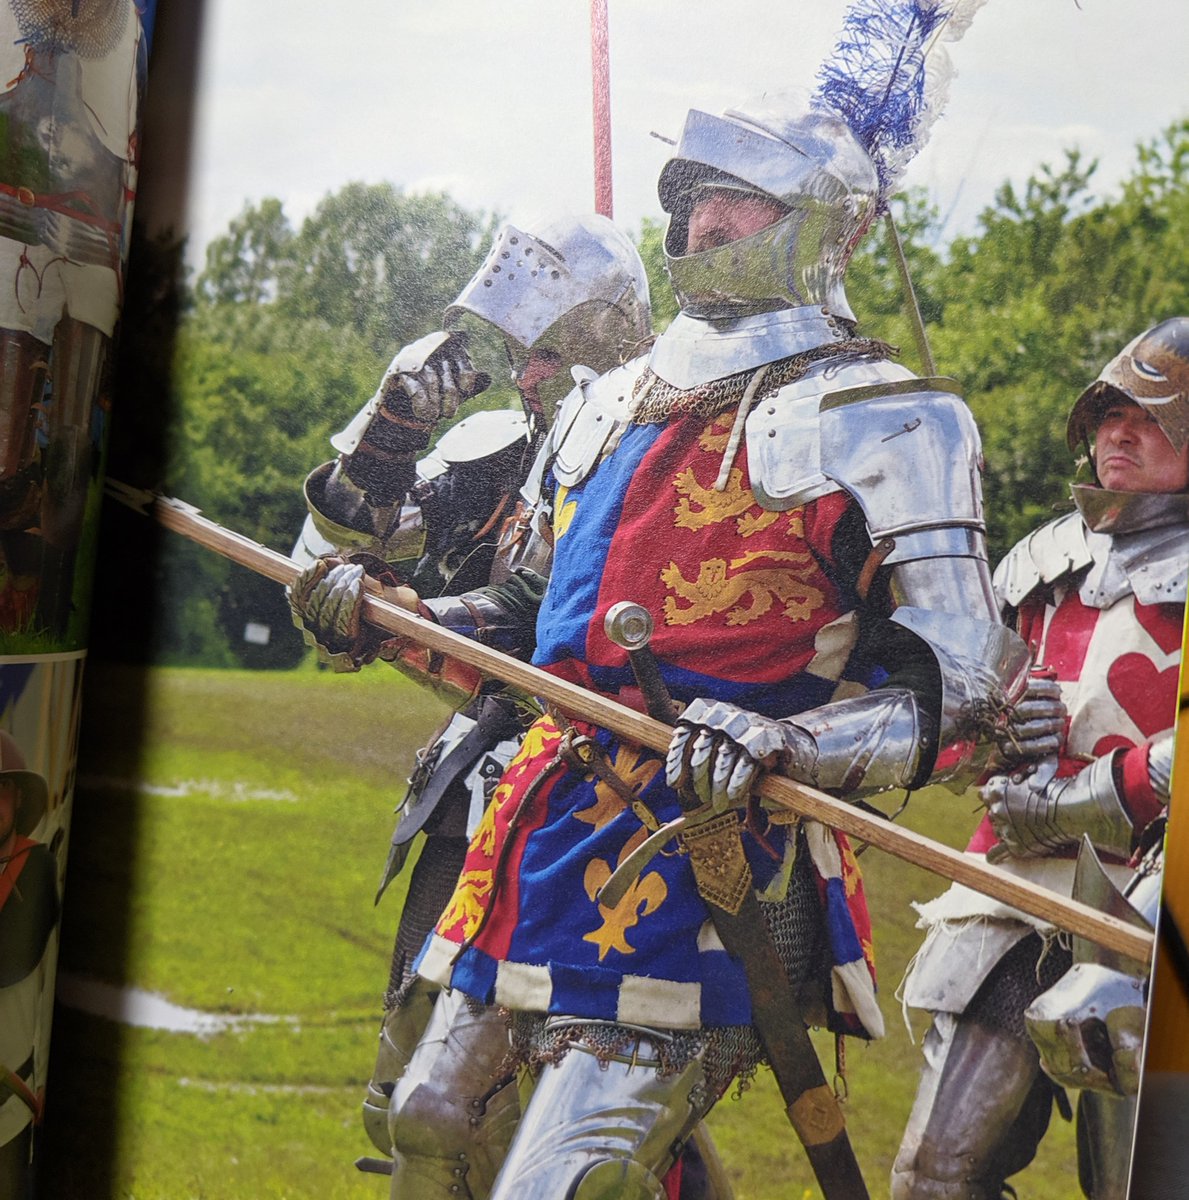 月魚 Auf Twitter 先日ツイートに流れてきた 英国男子甲冑コレクション を買ったのですが中身が素晴らしかったです ピカピカ鎧はもちろん少し錆びた冒険者っぽい装備のオジサマや馬上槍試合に鎧の各パーツの紹介に中世の村人な 服装まで140ページに写真てんこ盛り